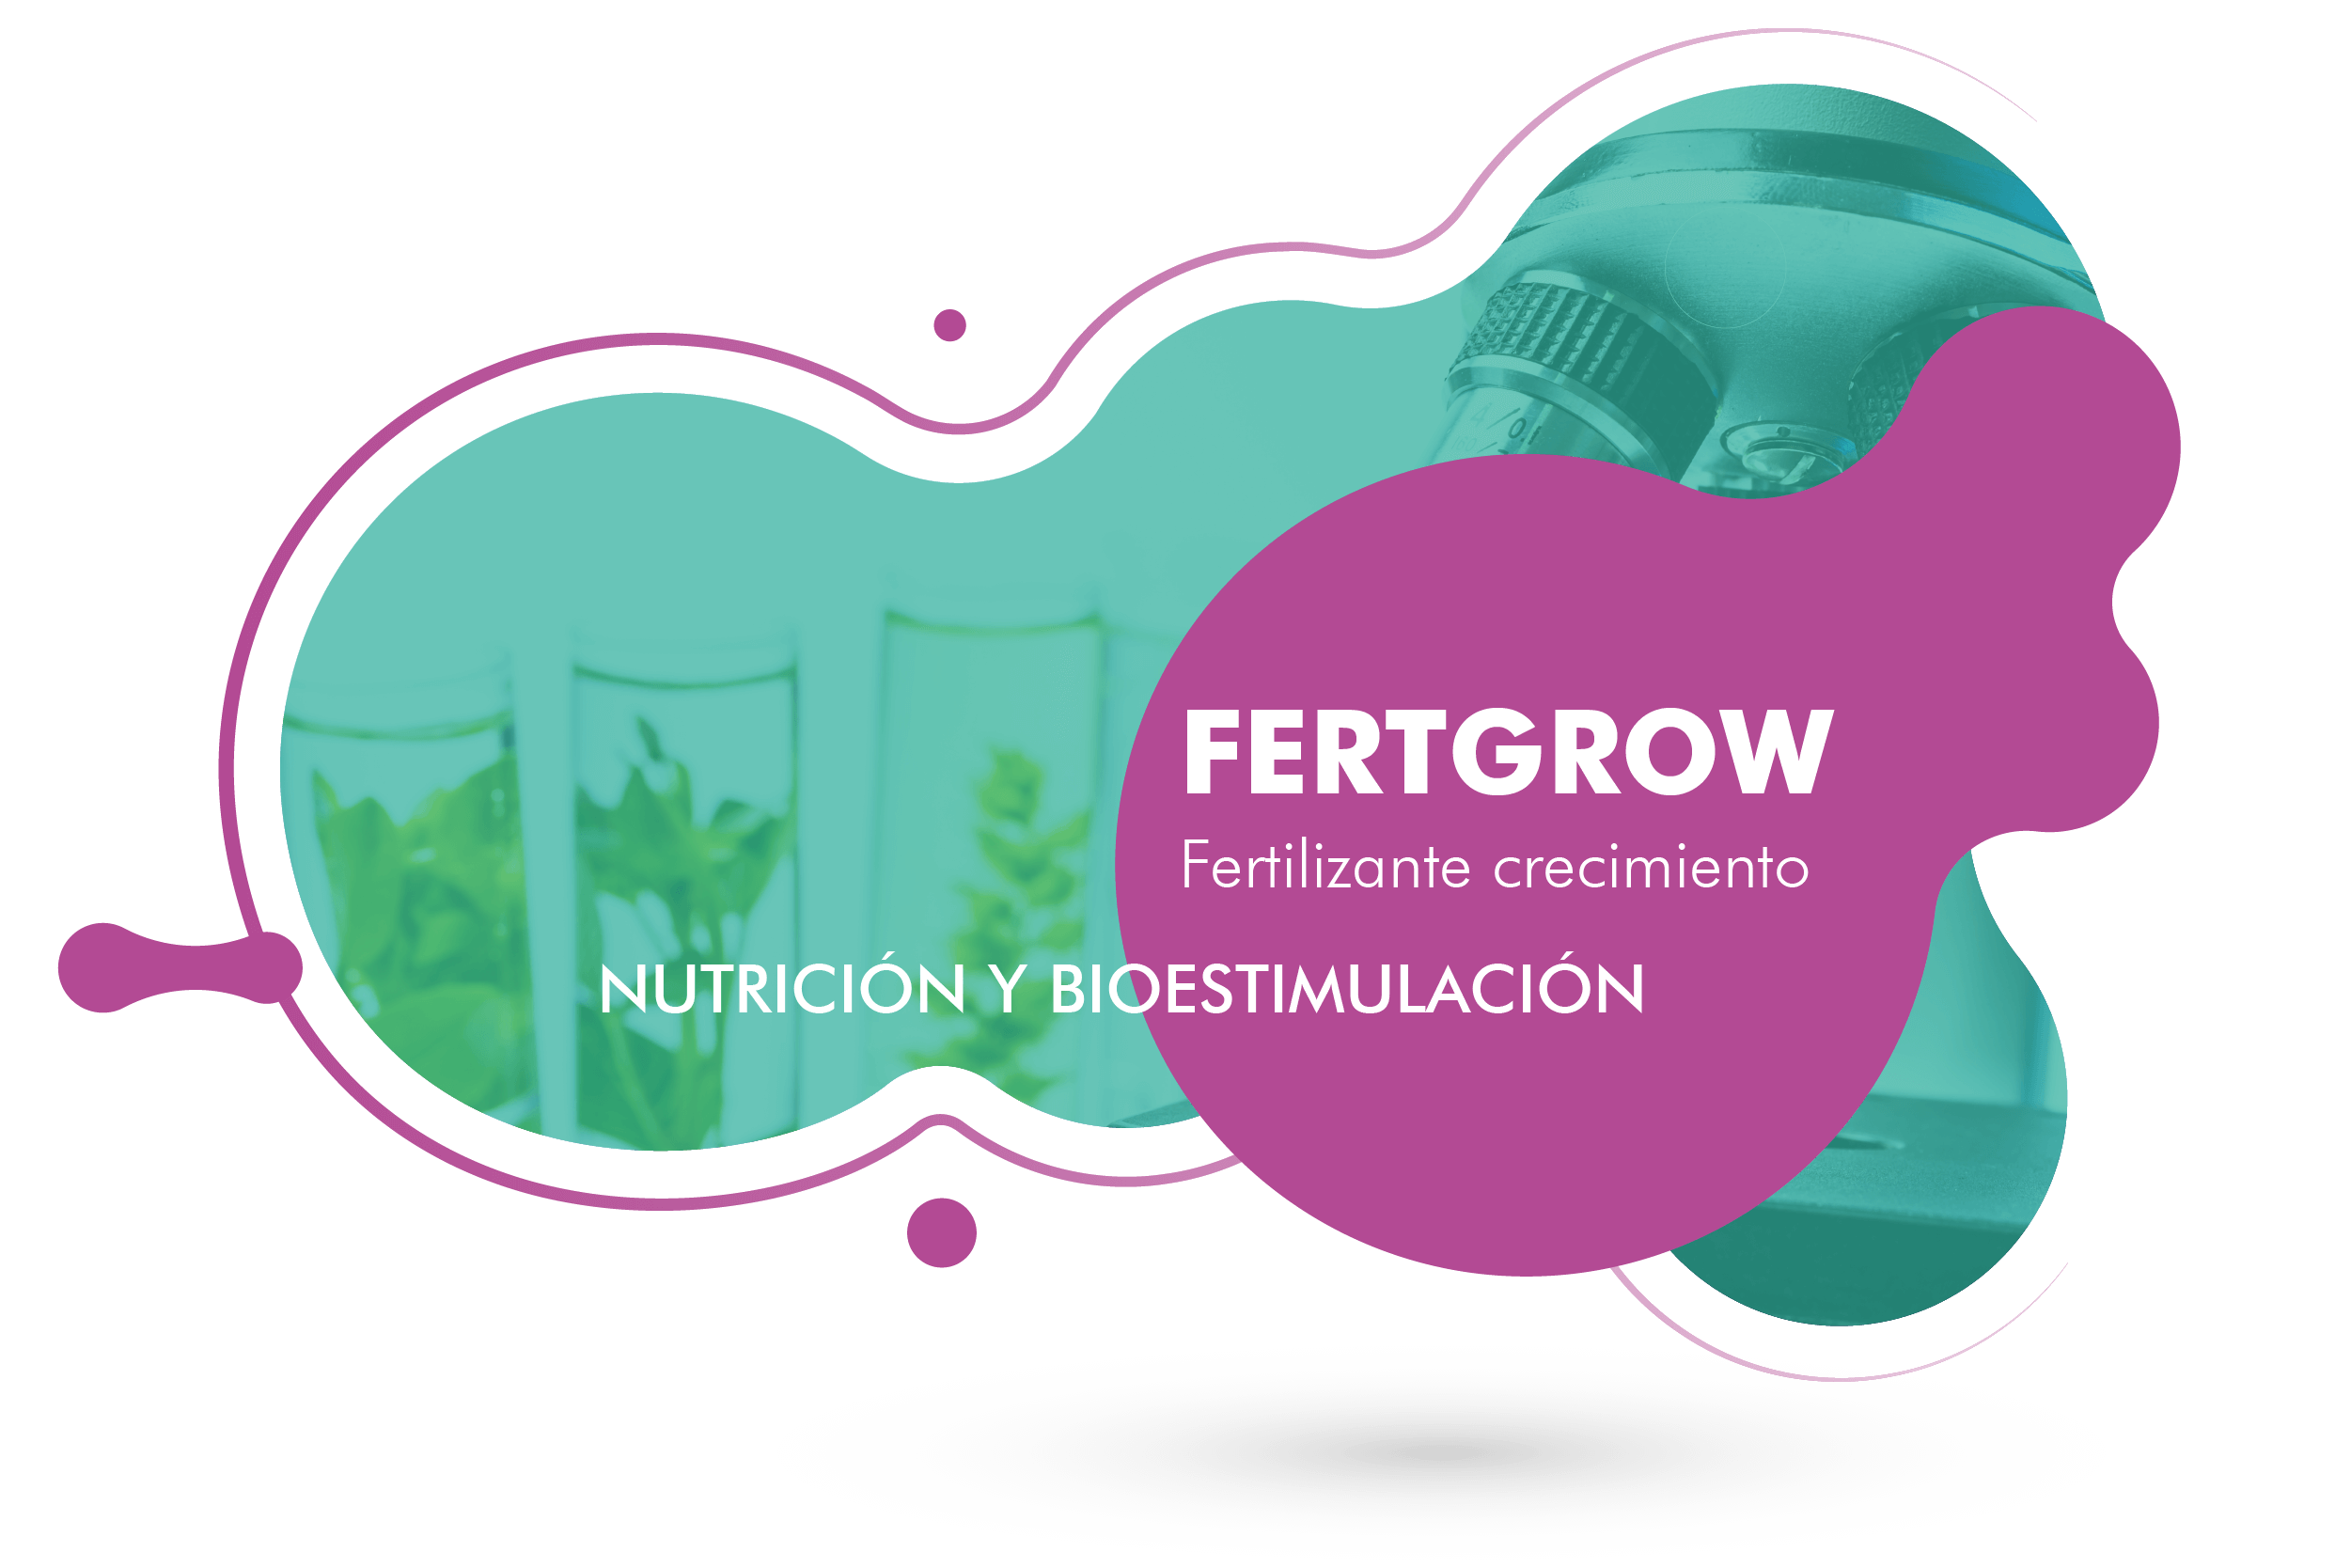 Fertgrow